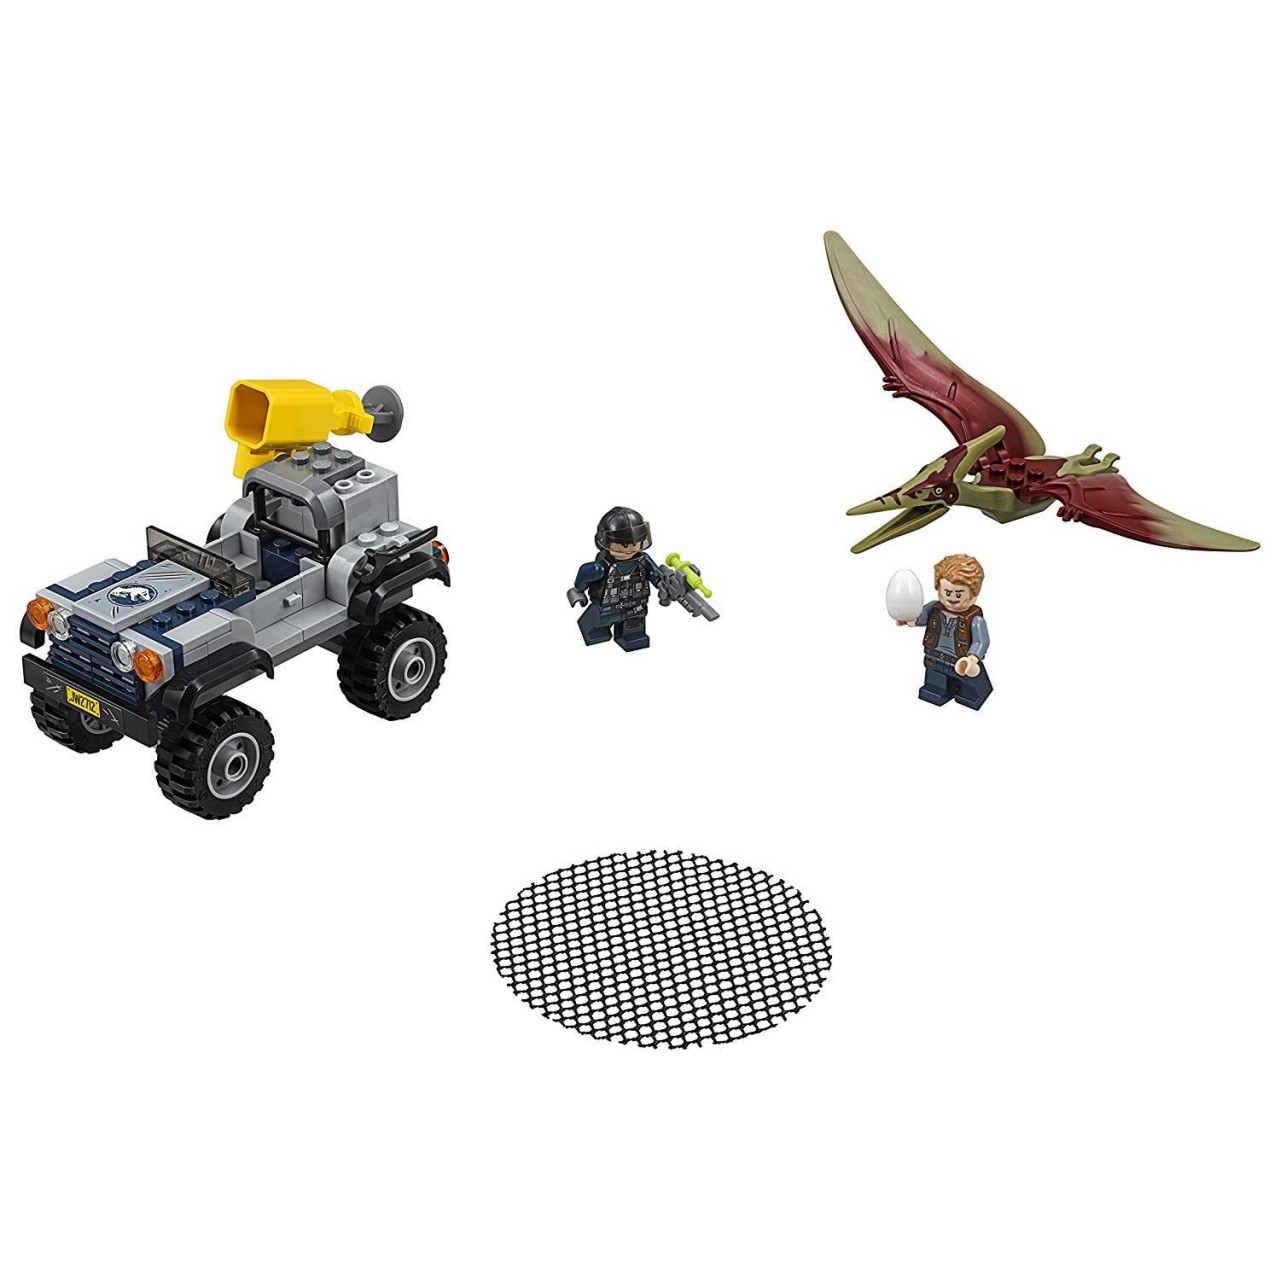 LEGO JURASSIC WORLD 75926 Pteranodon-Jagd